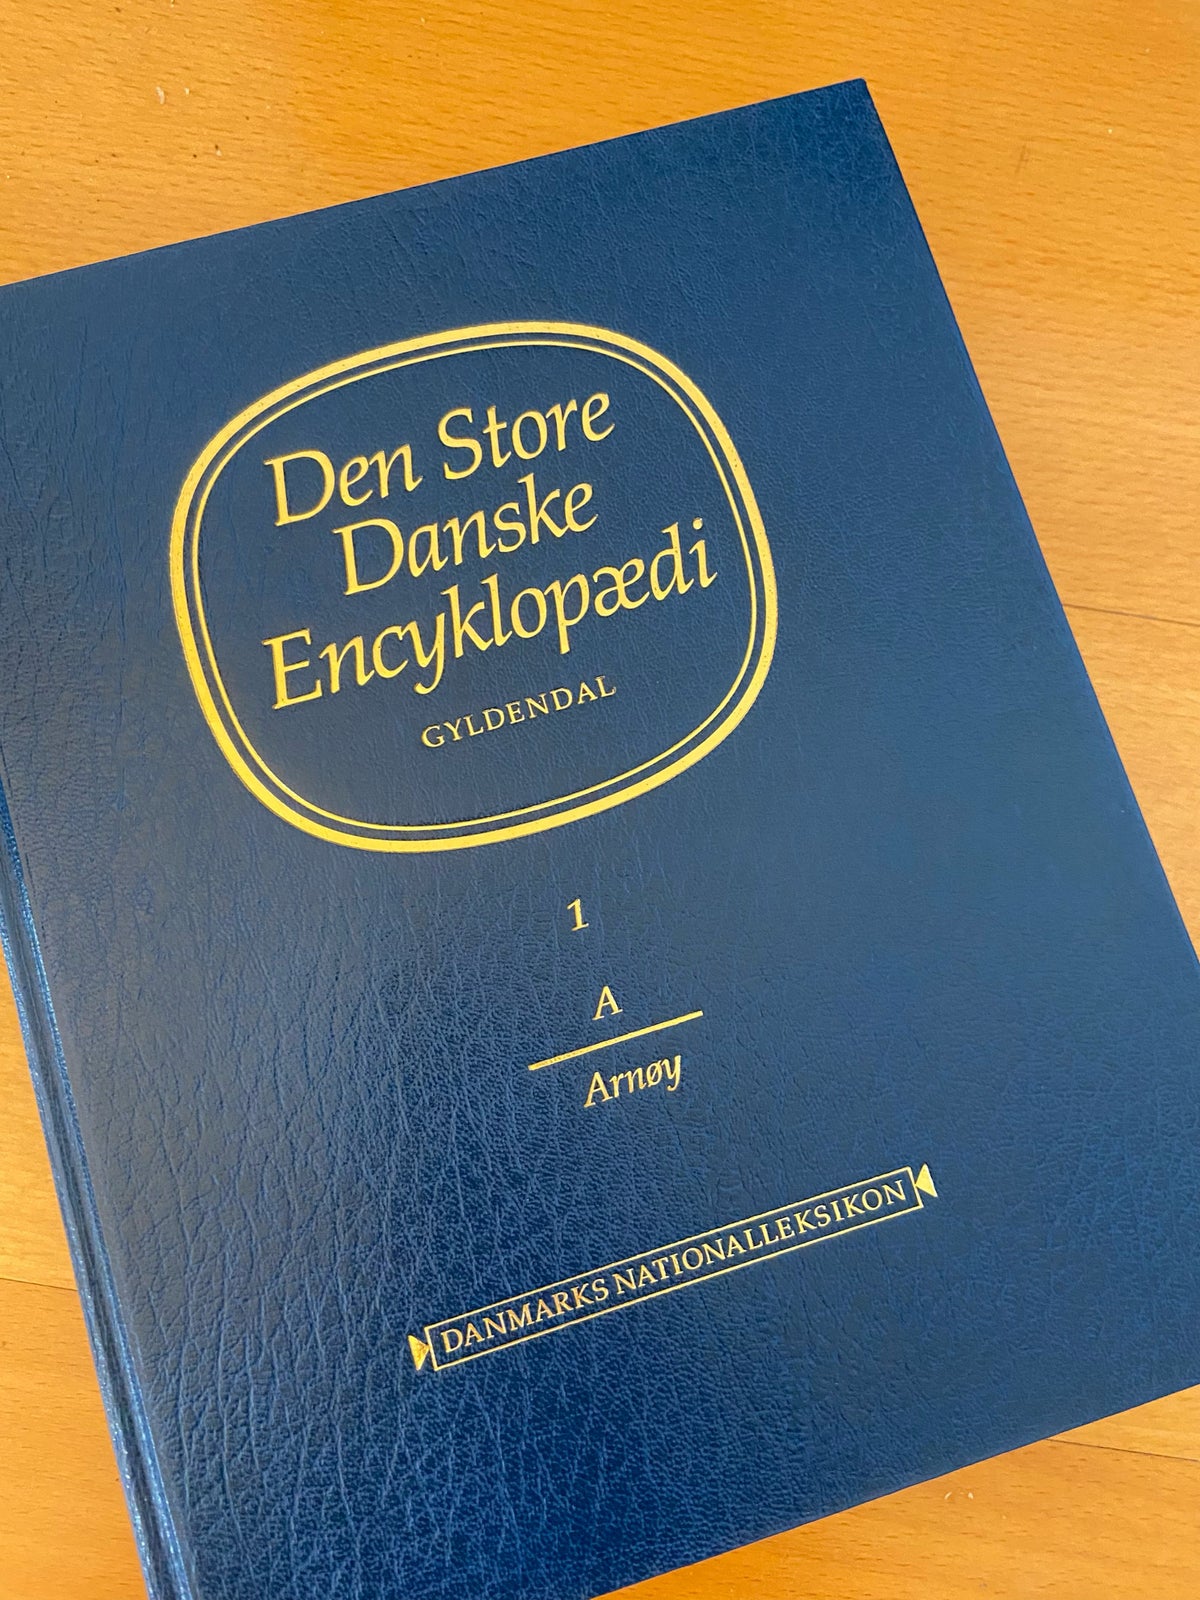 Gratis / bortgives. Den store danske encyklopæd...